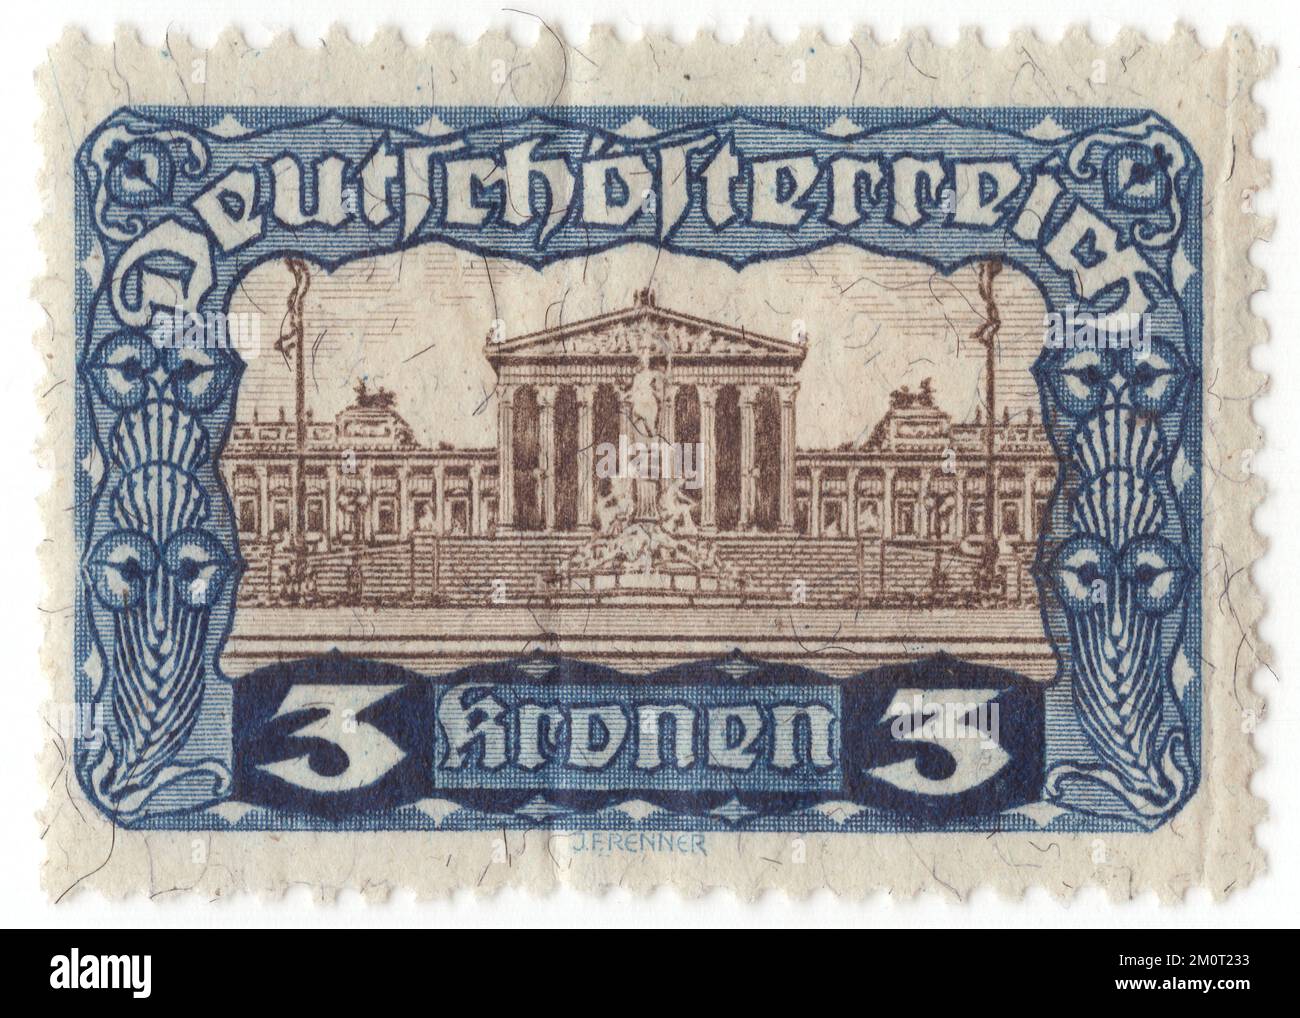 AUTRICHE - 1919 : timbre-poste bleu et brun-noir de 3 krone représentant l'édifice du Parlement. Numéro de la première République. C'est dans le bâtiment du Parlement autrichien de Vienne que les deux chambres du Parlement autrichien organisent leurs sessions. Le bâtiment est situé sur le boulevard Ringstraße dans le premier quartier Innere Stadt, près du palais Hofburg et du palais de justice. Il a été construit pour abriter les deux chambres du Conseil impérial (Reichsrat), la législature bicamérale de la partie cisléithanienne (autrichienne) de l'Empire austro-hongrois Banque D'Images